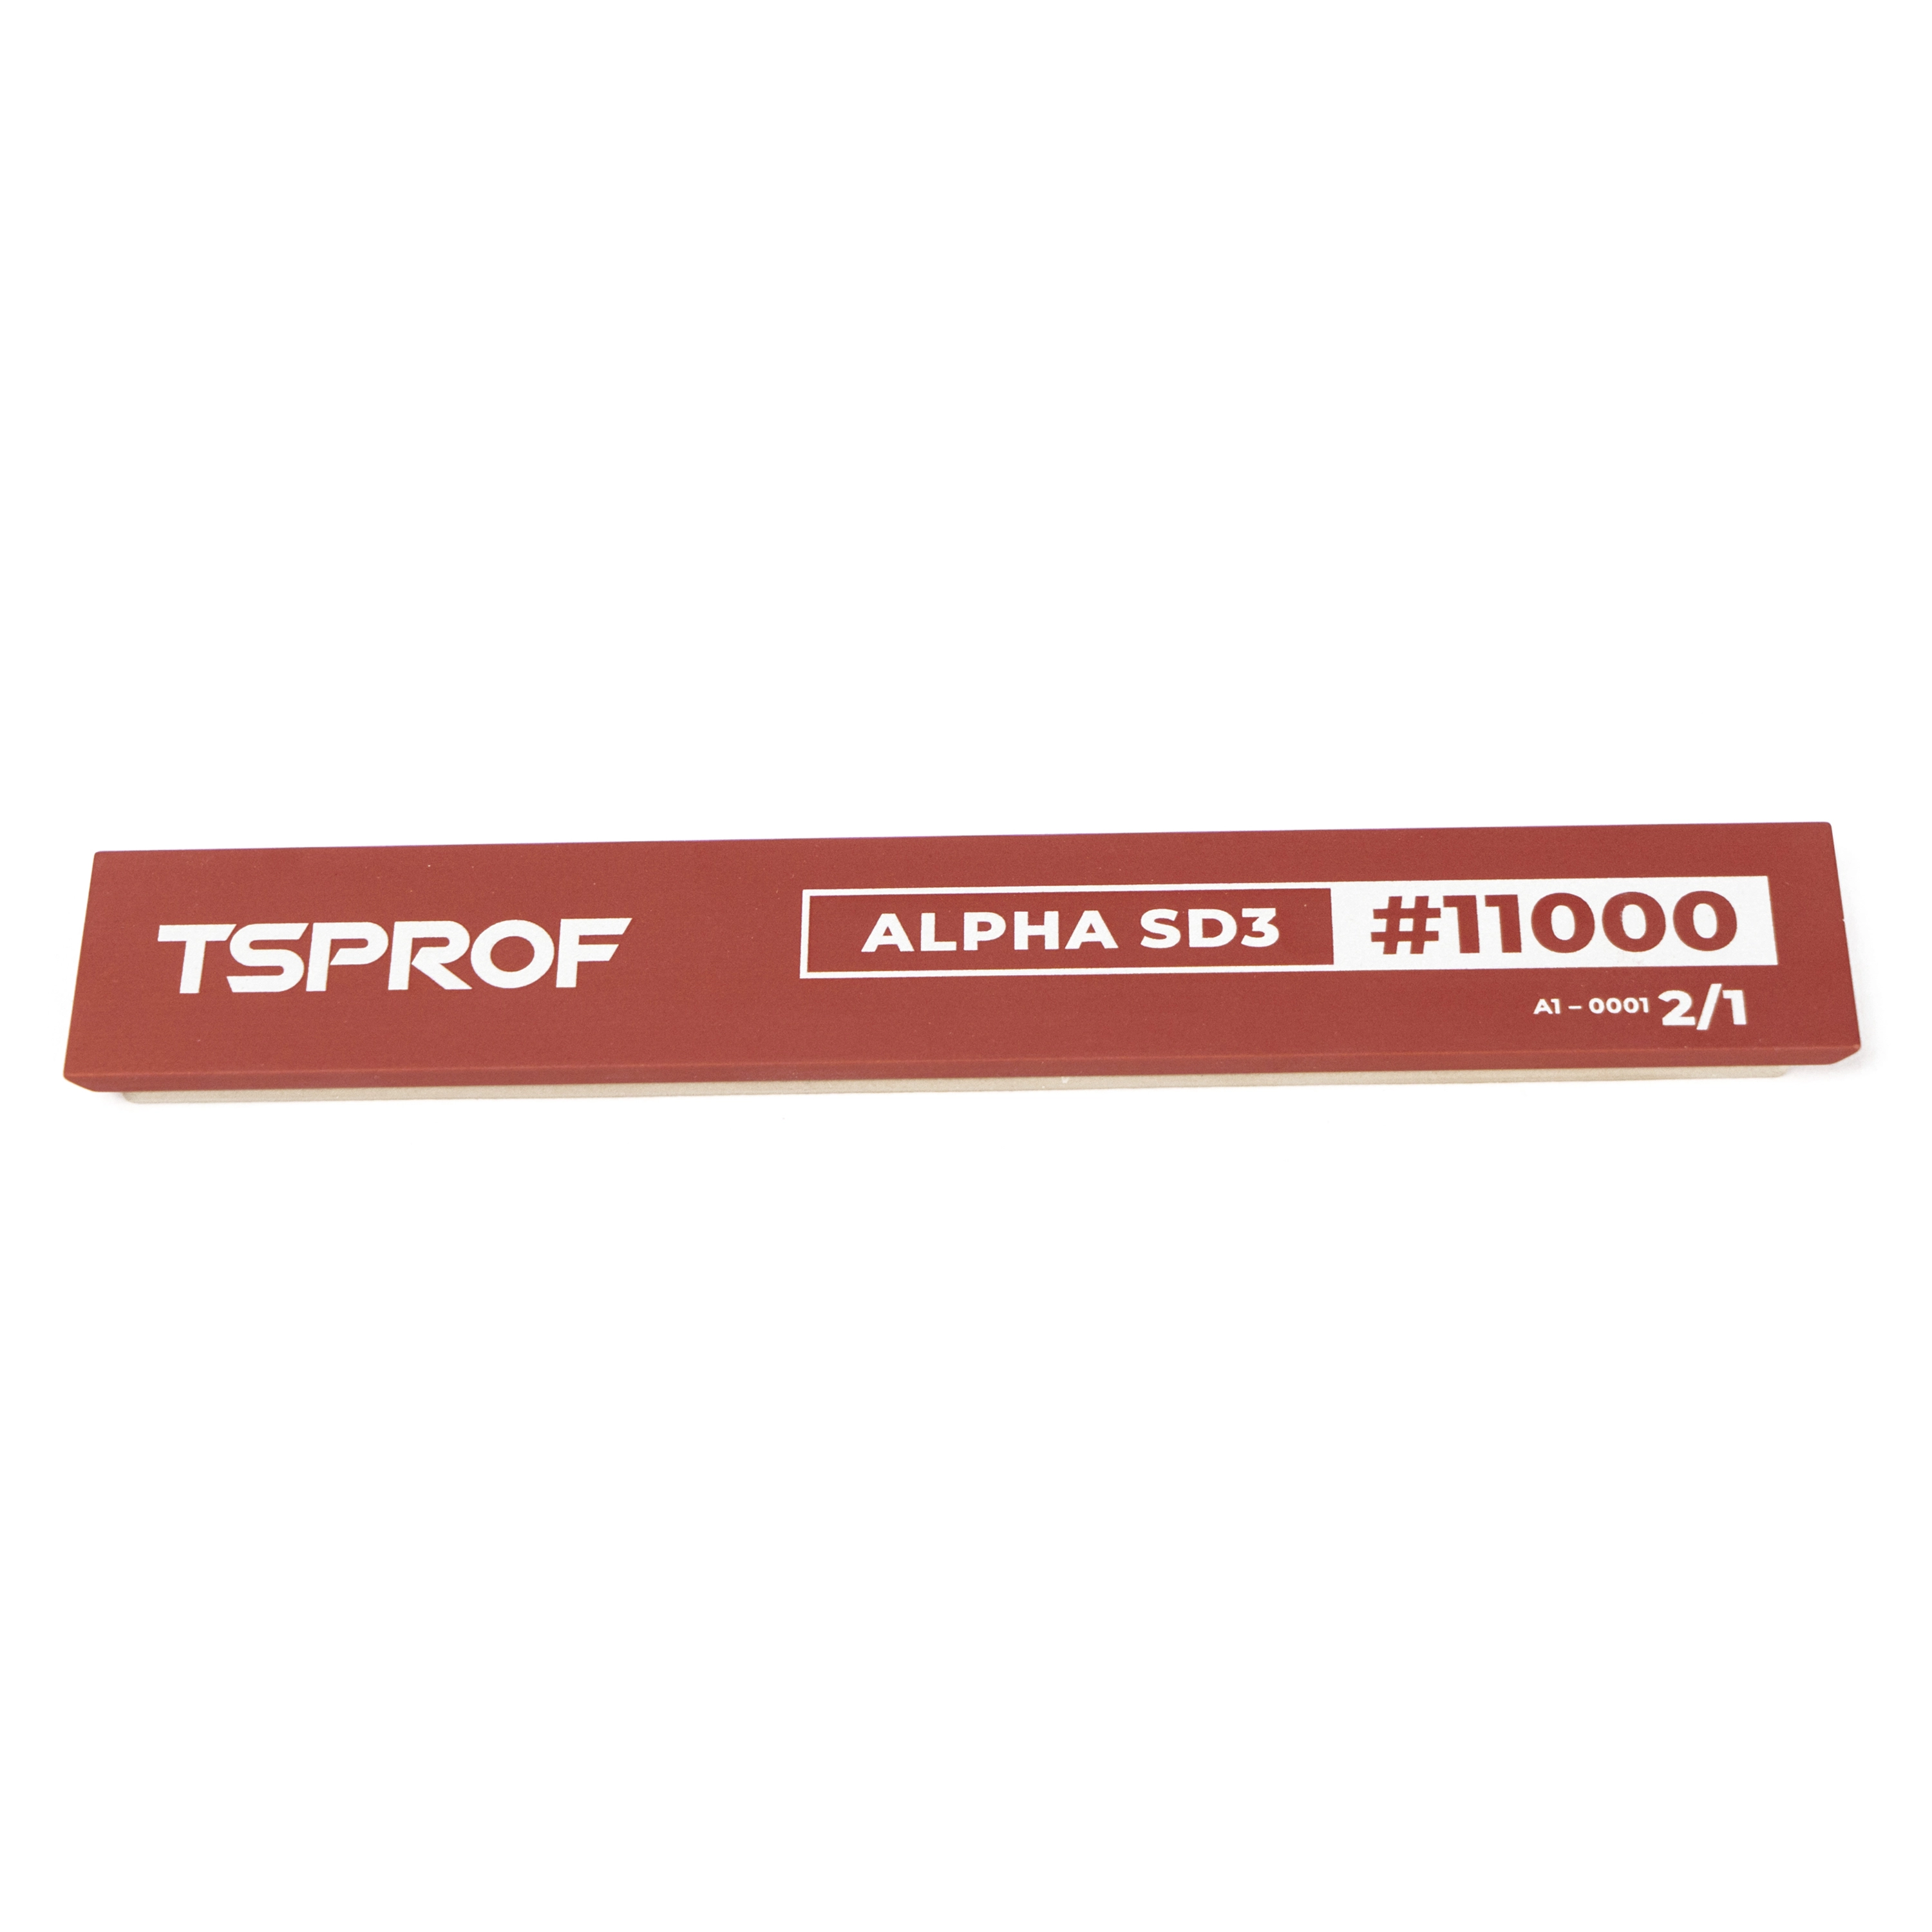 фото Алмазный брусок для заточки TSPROF Alpha SD3, 2/1 (11000 грит) на ytprof.ru